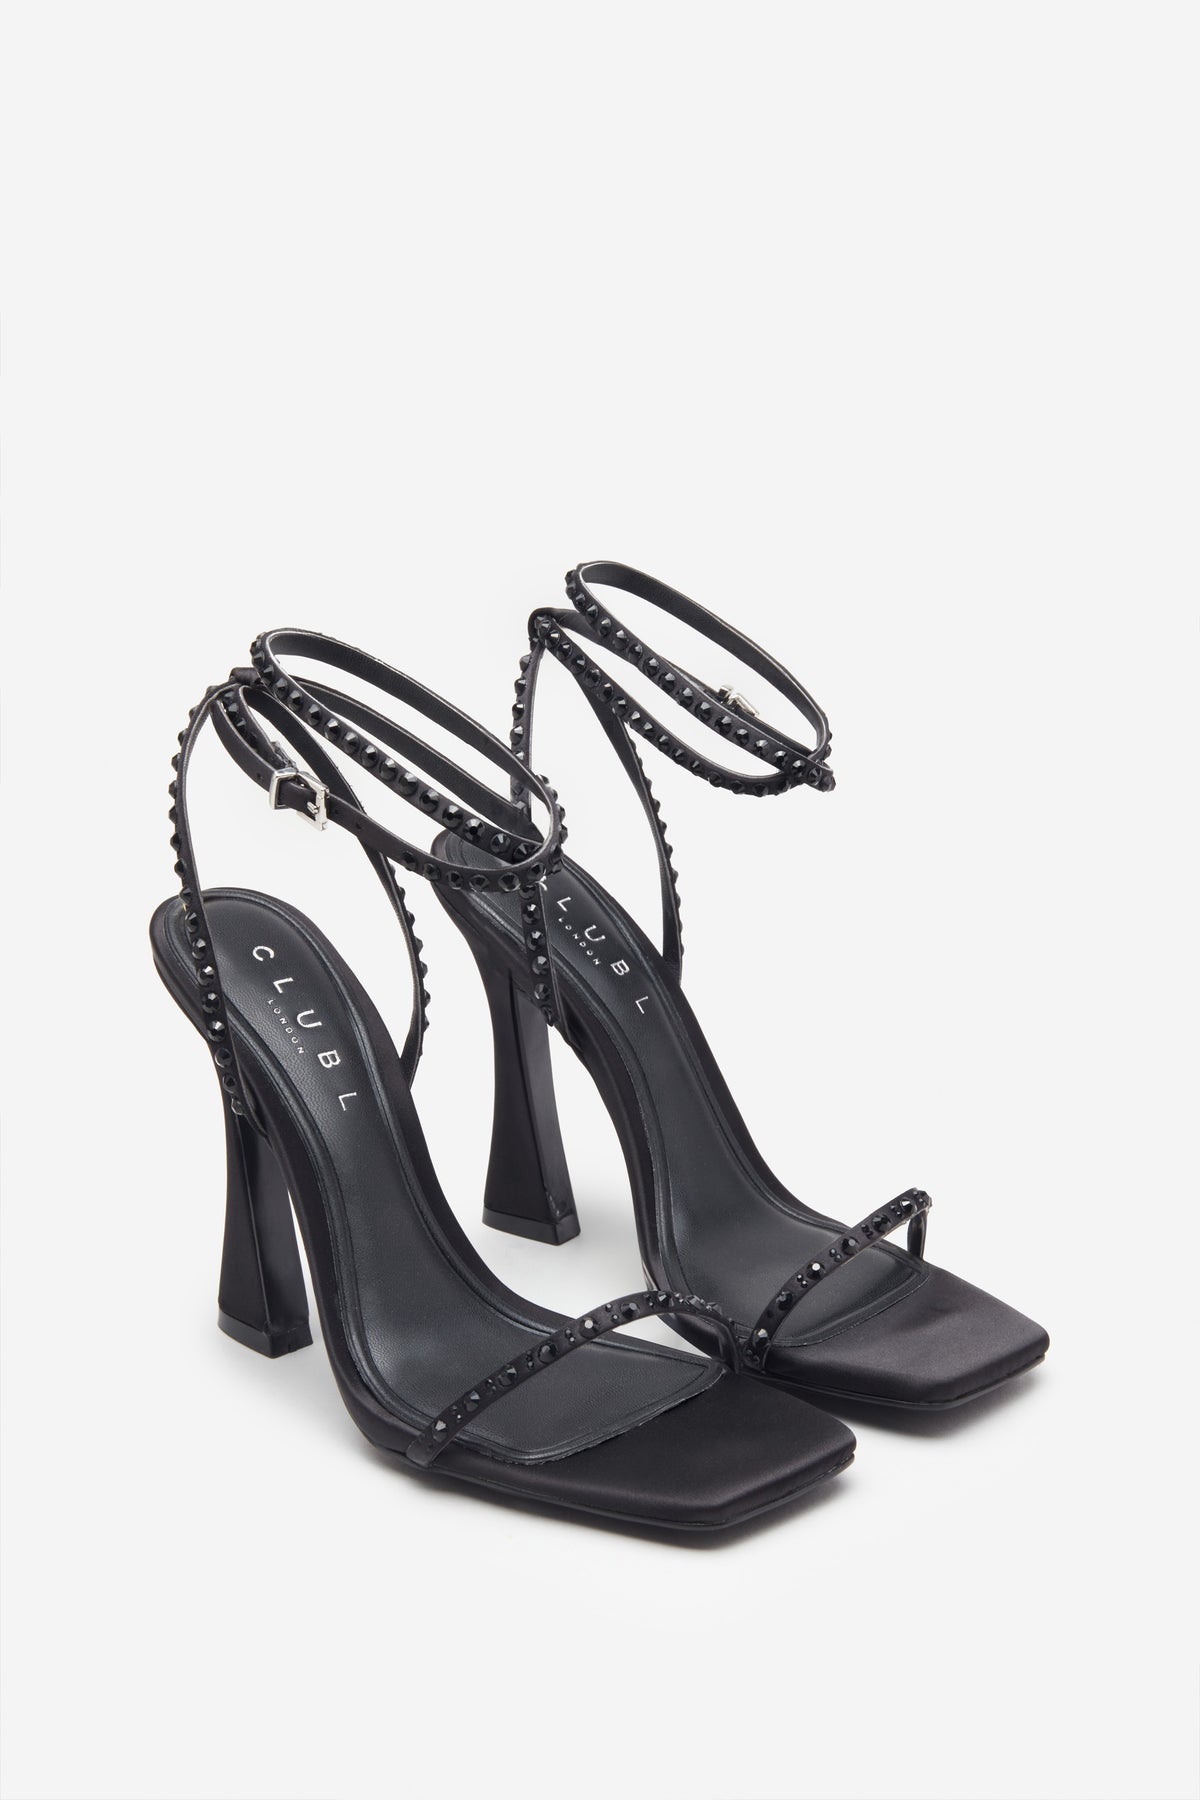 Nostalgia Black Satin Heeled Sandals With Diamante Straps – Club L ...